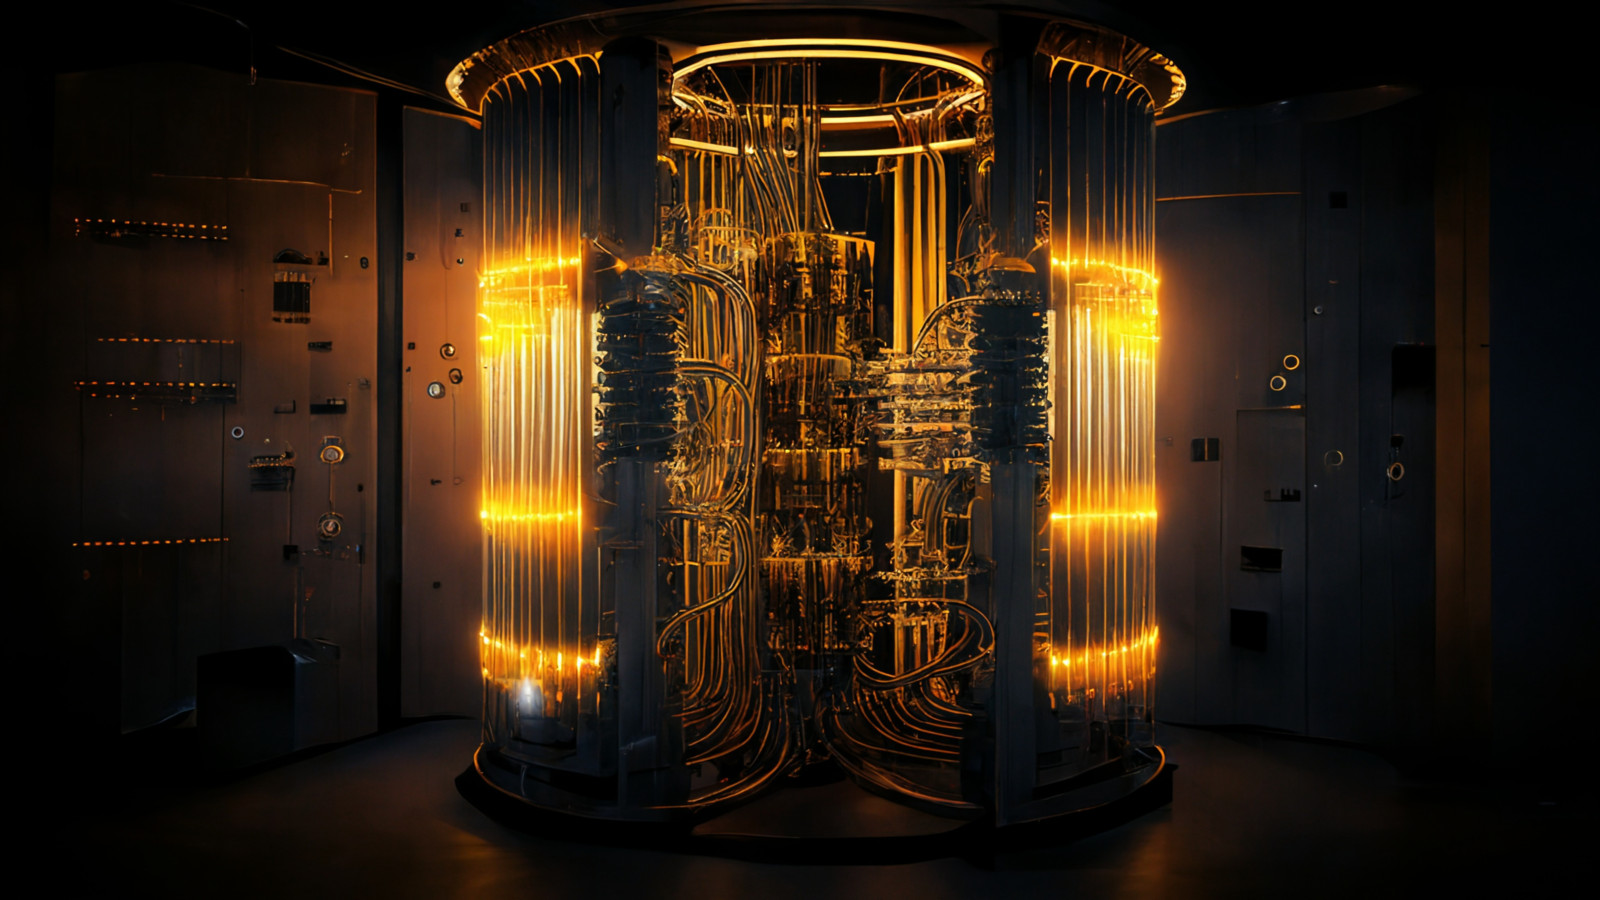 Bisher galten Quantencomputer als Zukunftstechnologie – wenn nicht gar als Science-Fiction. Tatsächlich aber stehen Quantencomputer kurz davor, zumindest in der Forschung „Mainstream“ zu werden. 